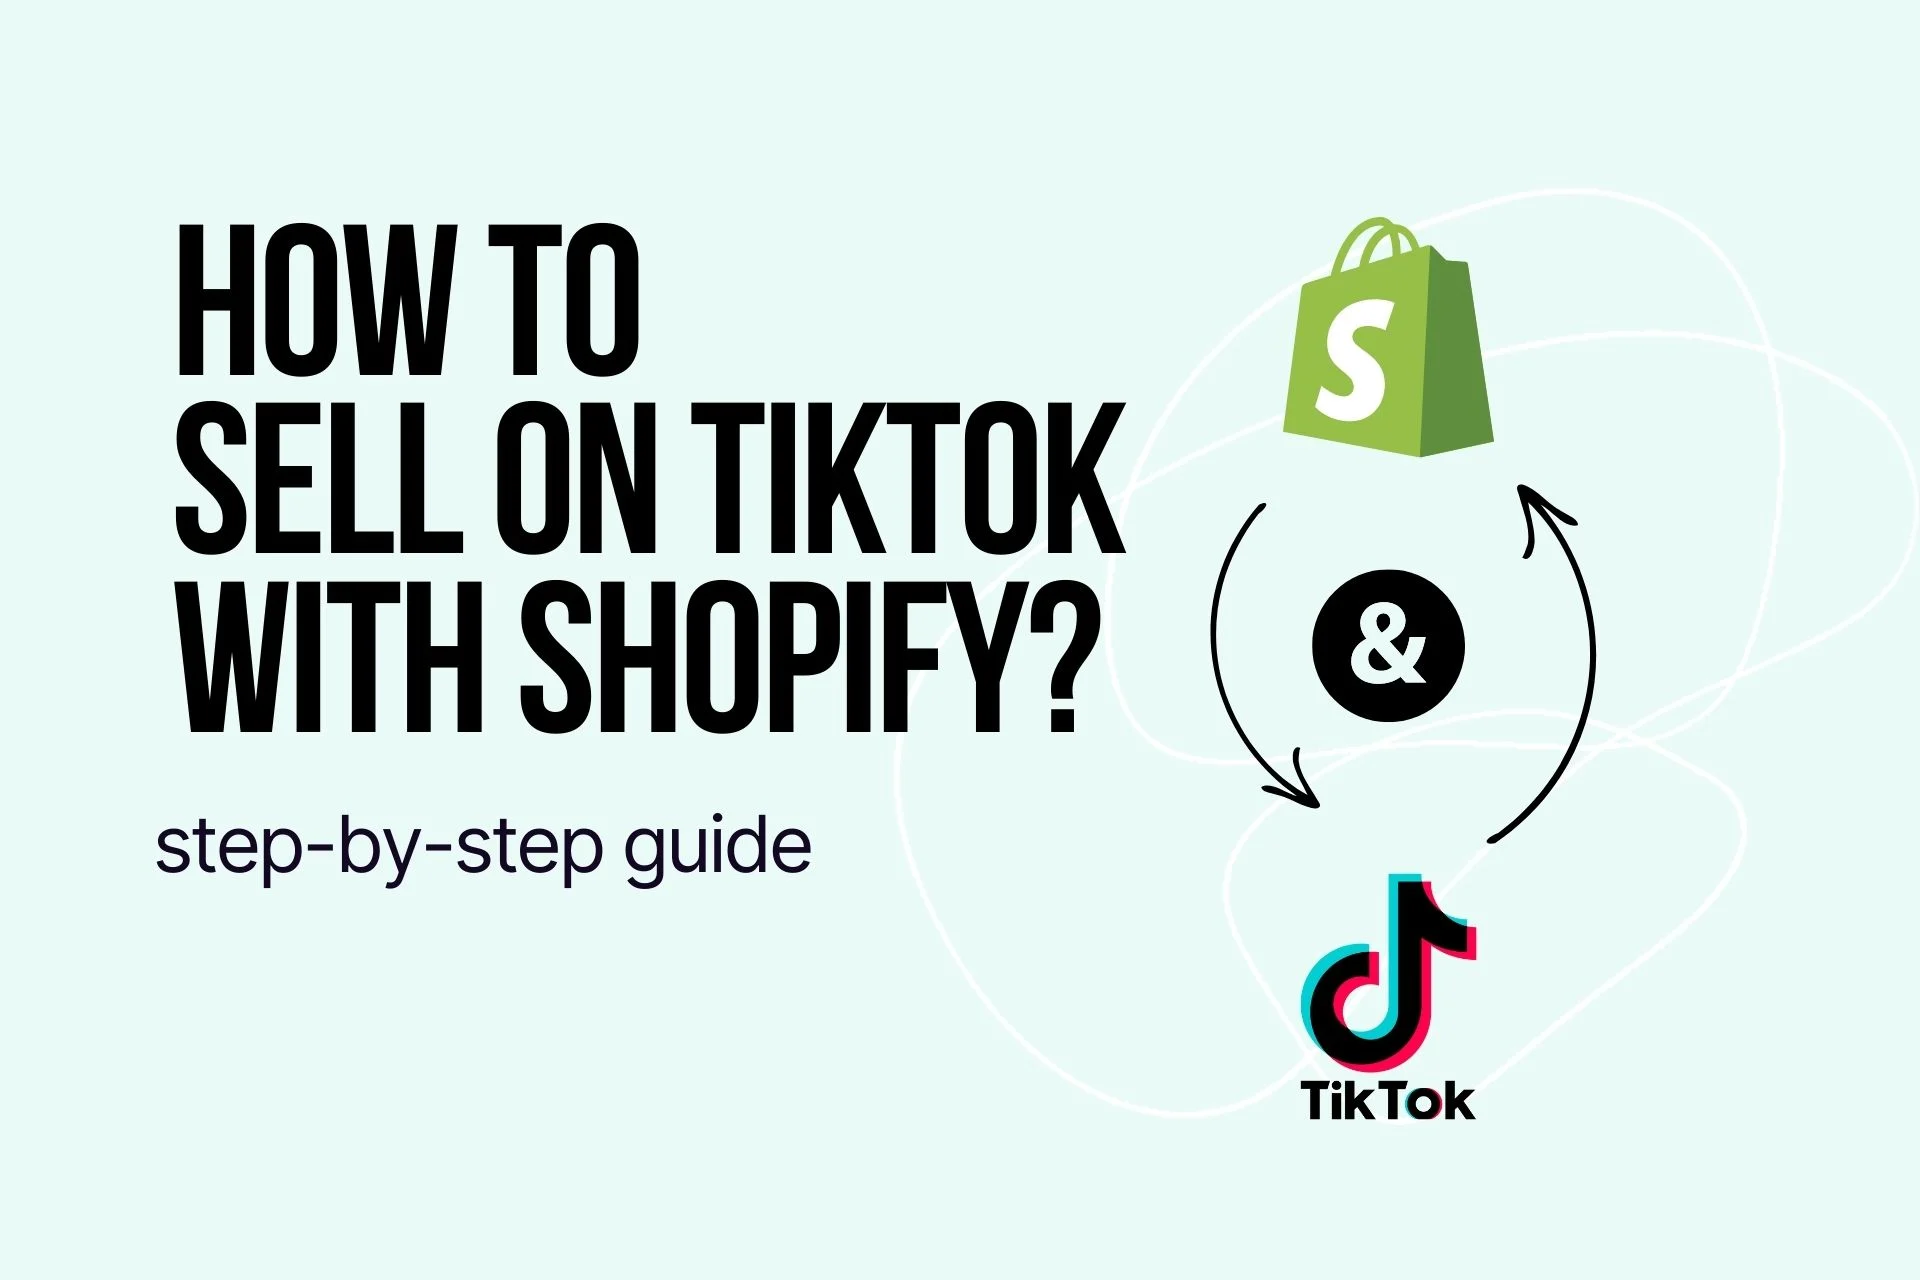 How to Use TikTok: A Step-by-Step Guide